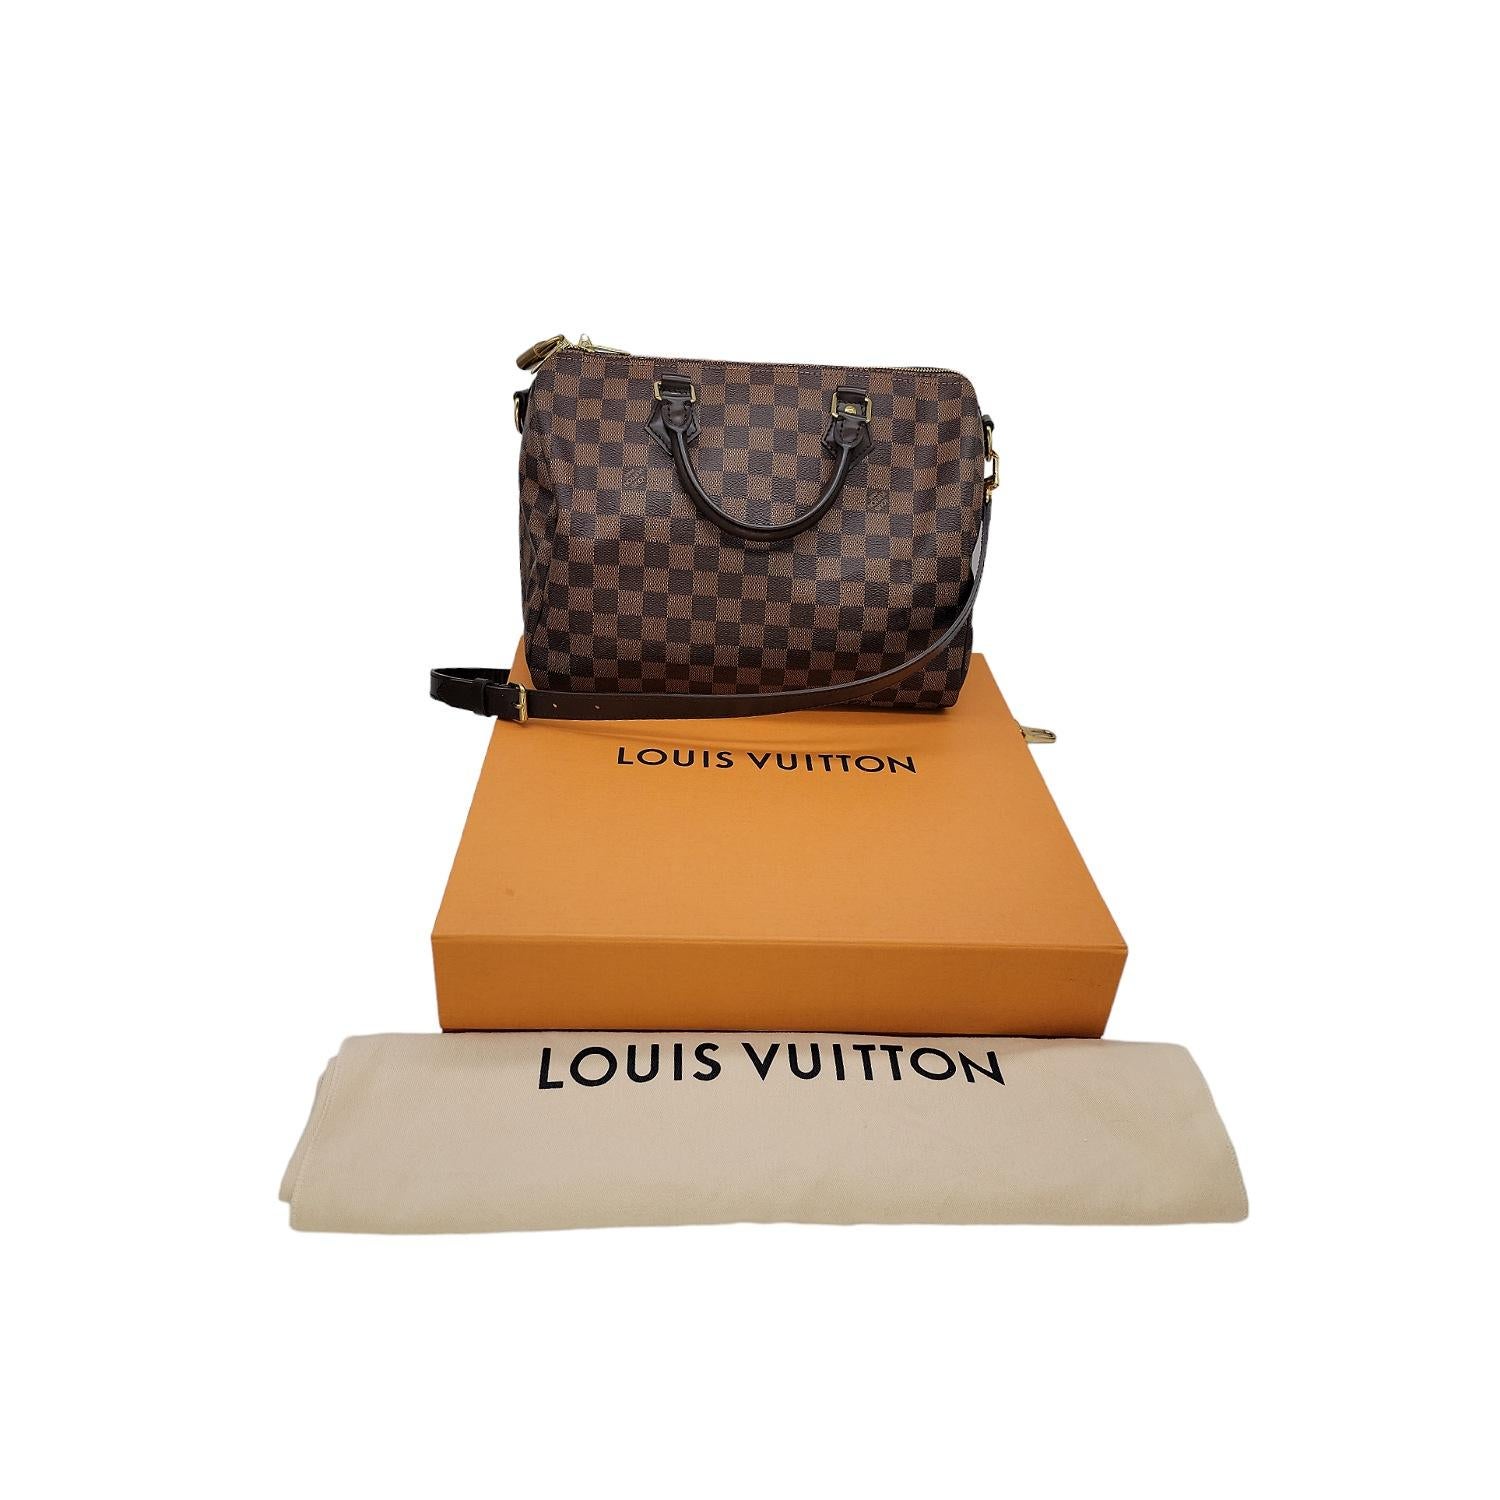 Diese Louis Vuitton Speedy Bandouliere 30 wurde in den USA hergestellt und ist aus dem klassischen Louis Vuitton Damier Ebene beschichtetem Canvas mit Lederbesatz und goldfarbenen Beschlägen gefertigt. Sie hat zwei gerollte Ledergriffe an der